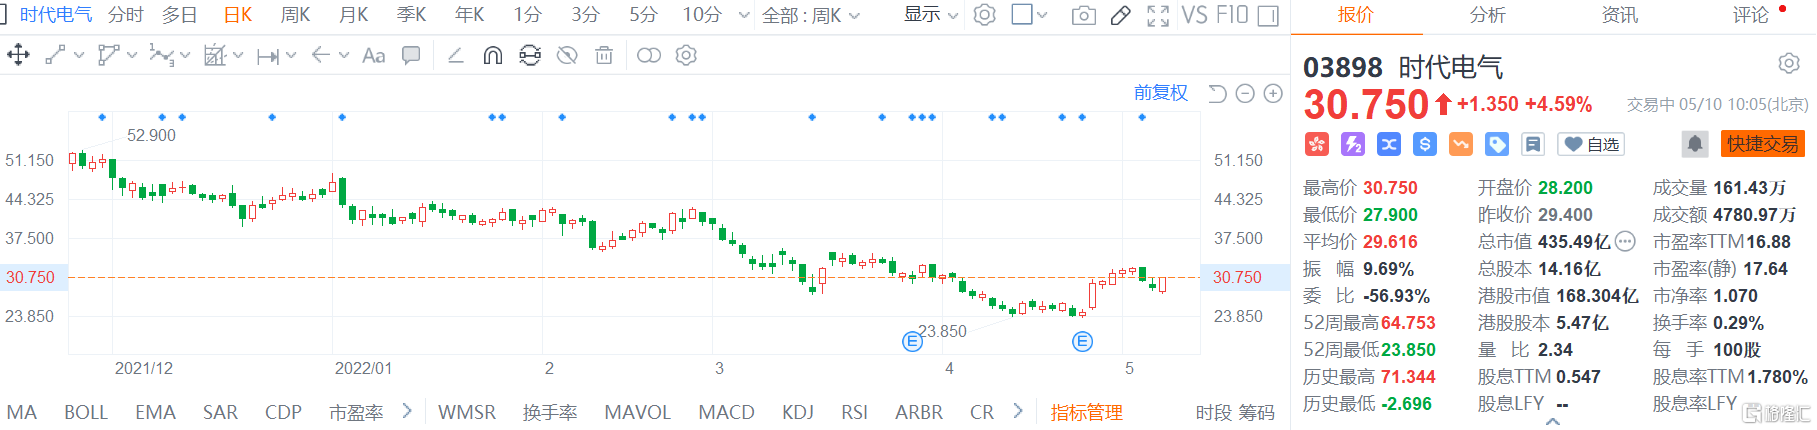 时代电气(3898.HK)快速拉升 现报30.75港元涨幅4.6%